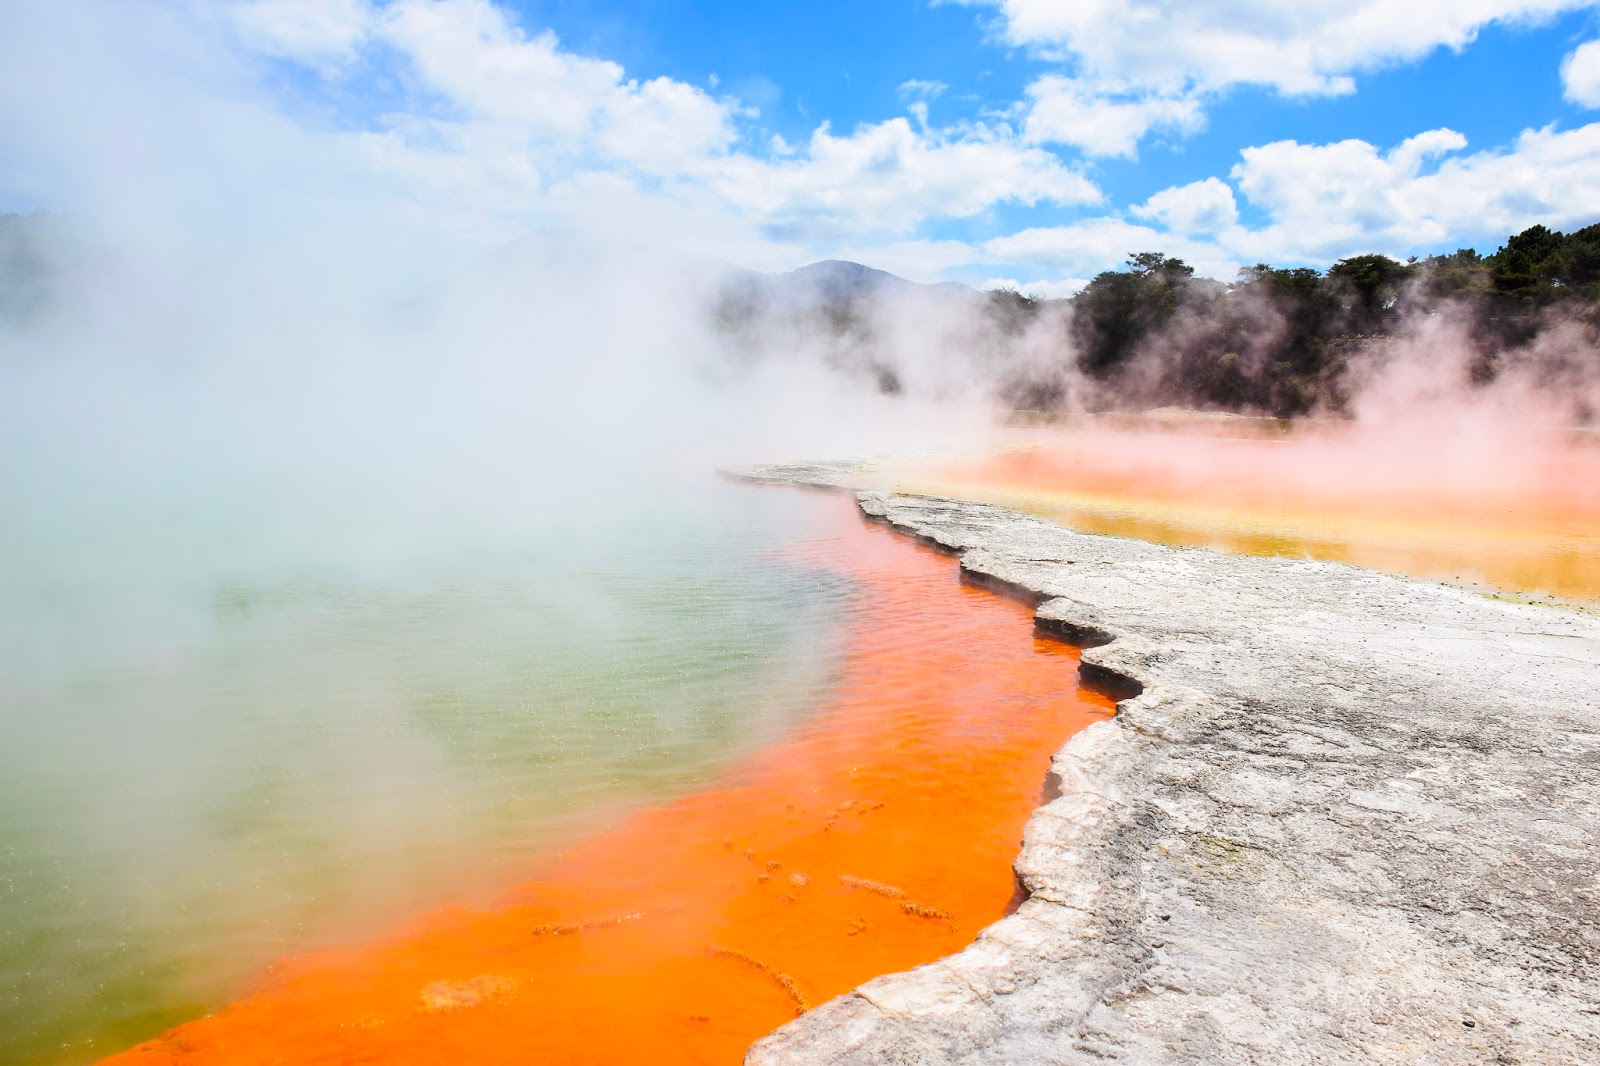 wai-o-tapu geothermal wonderland